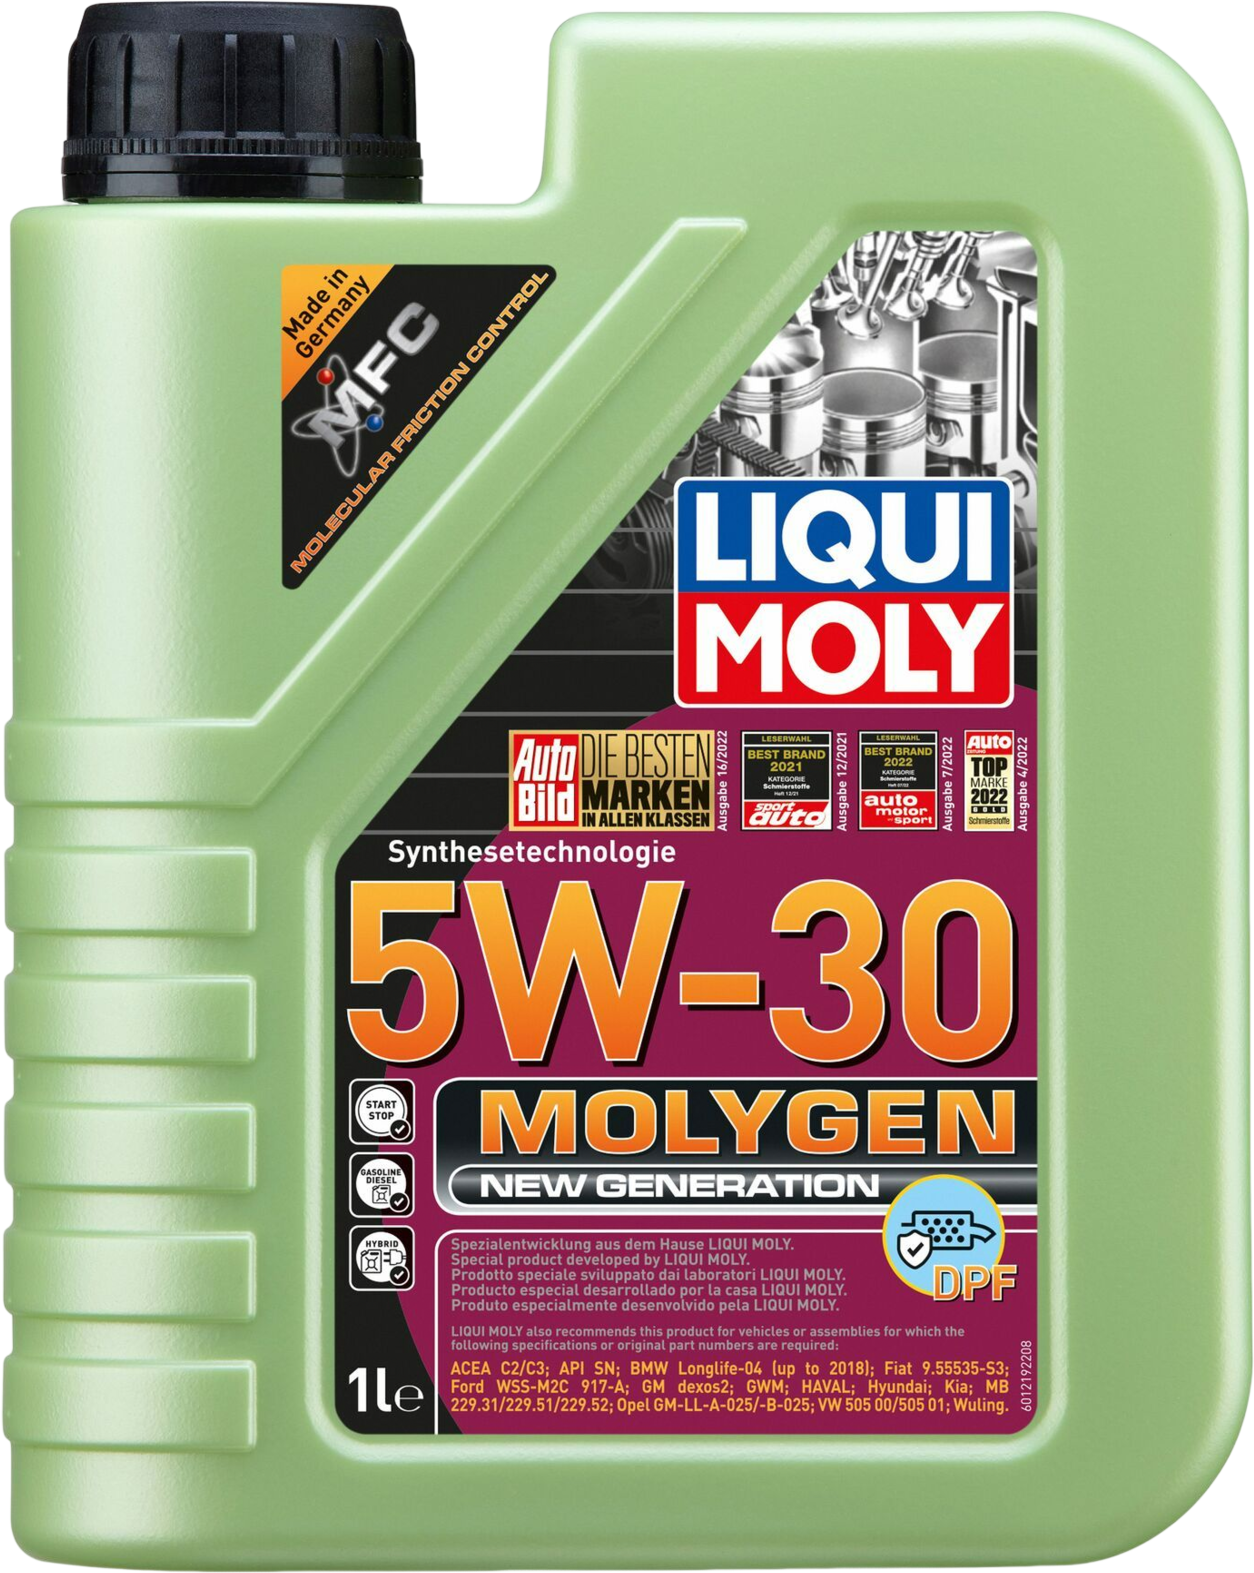 Liqui Moly Molygen New Generation 5W-30 DPF, 1 lt